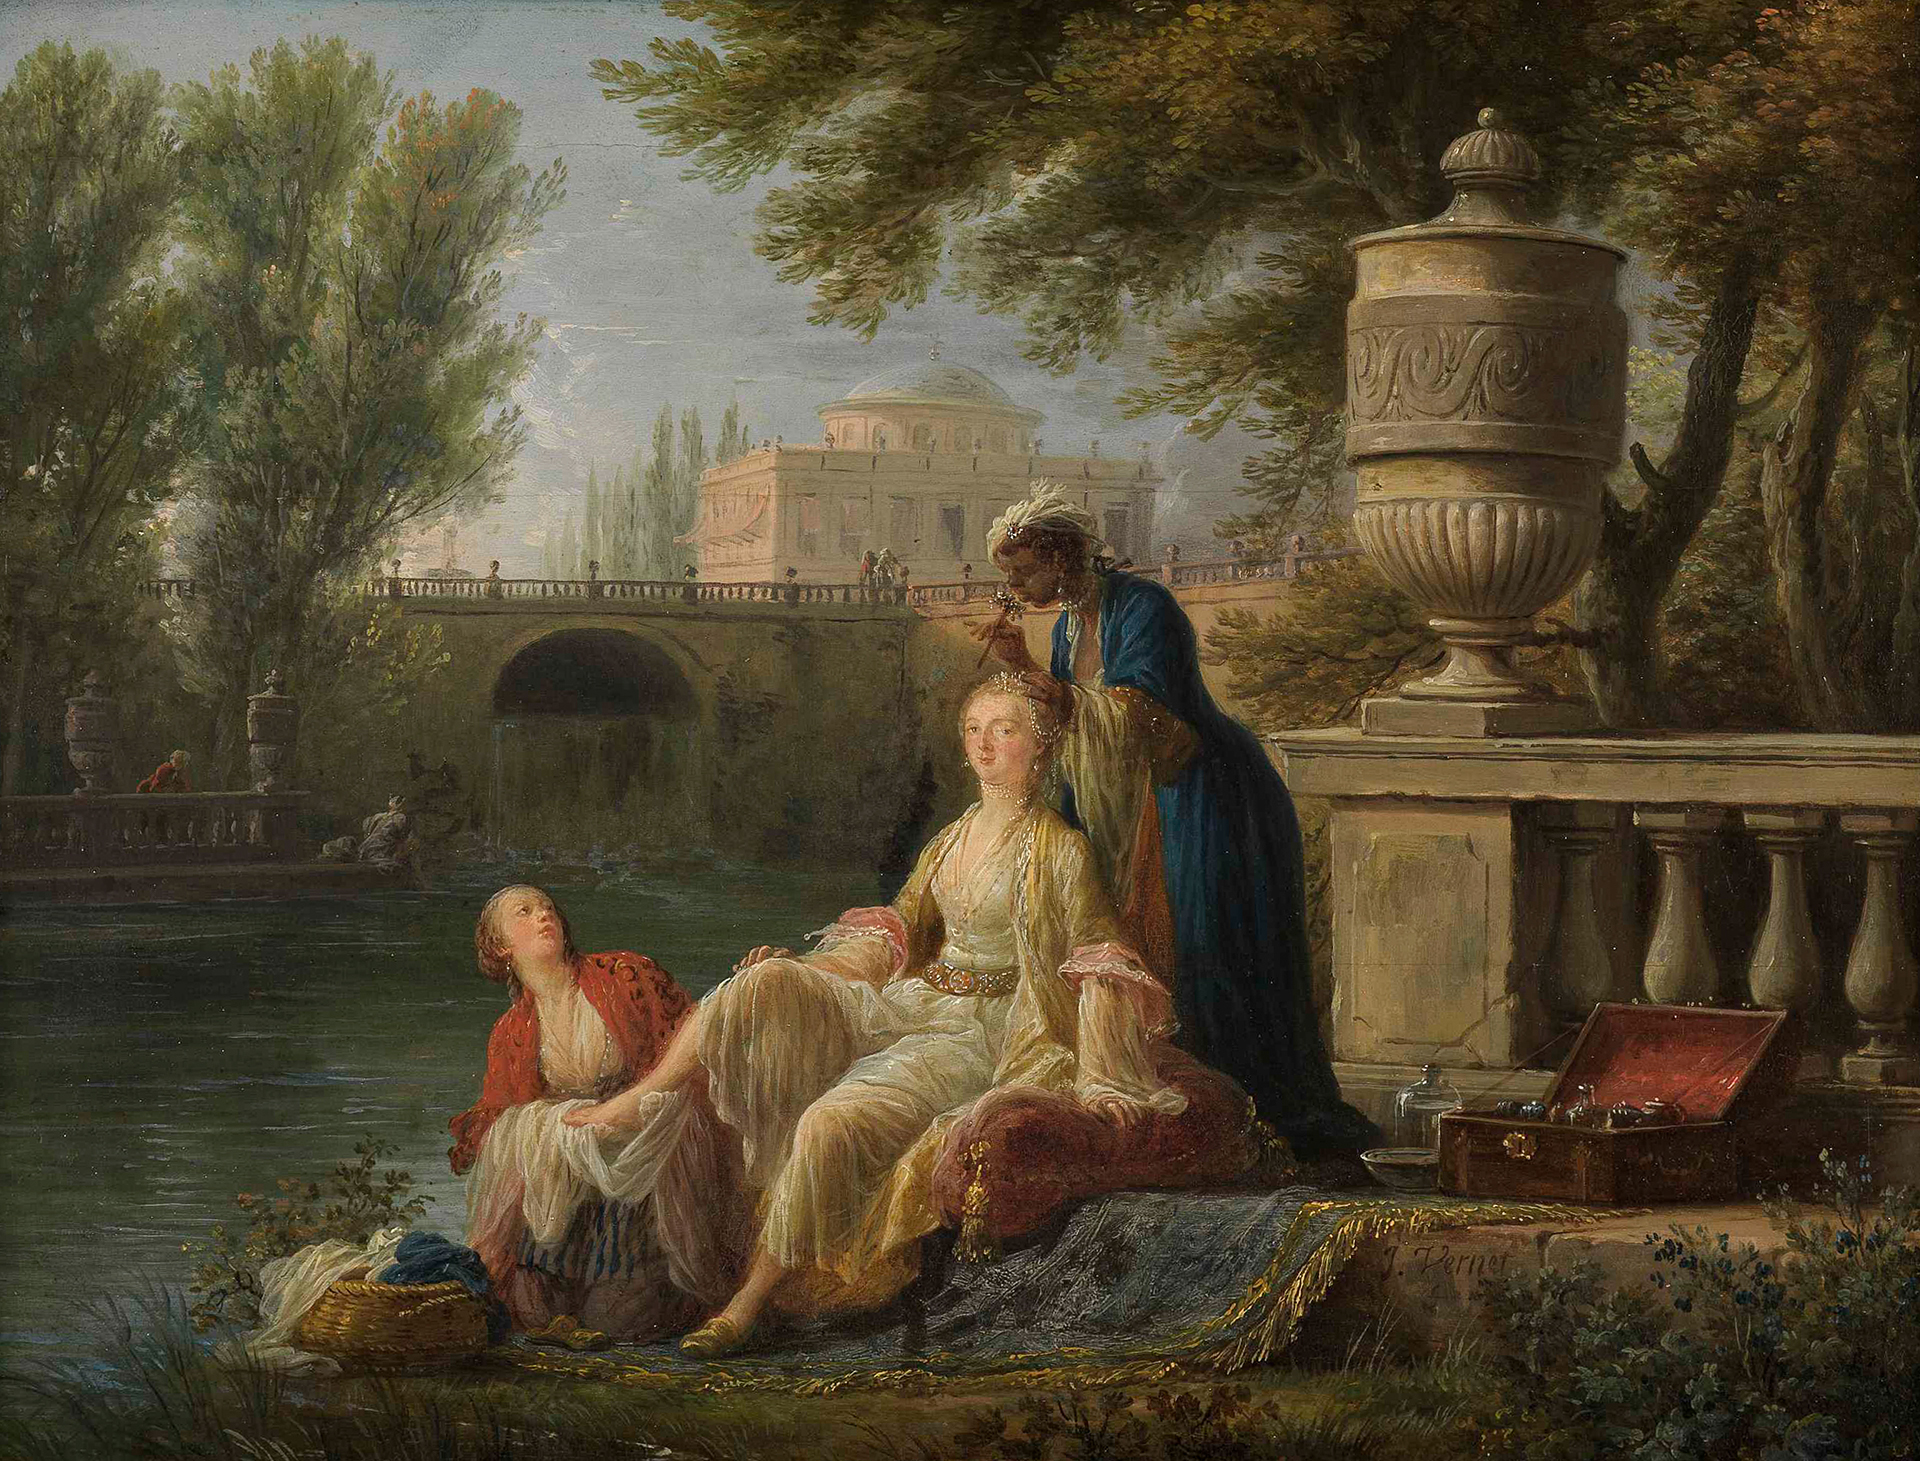 Am Flussufer vor einer Ballustrade mit Vasenschmuck eine edel gekleidete Frau. Eine weiße und eine schwarze Dienerin frisieren sie und waschen ihr die Füße. Im Hintergrund eine Stadtkulisse.